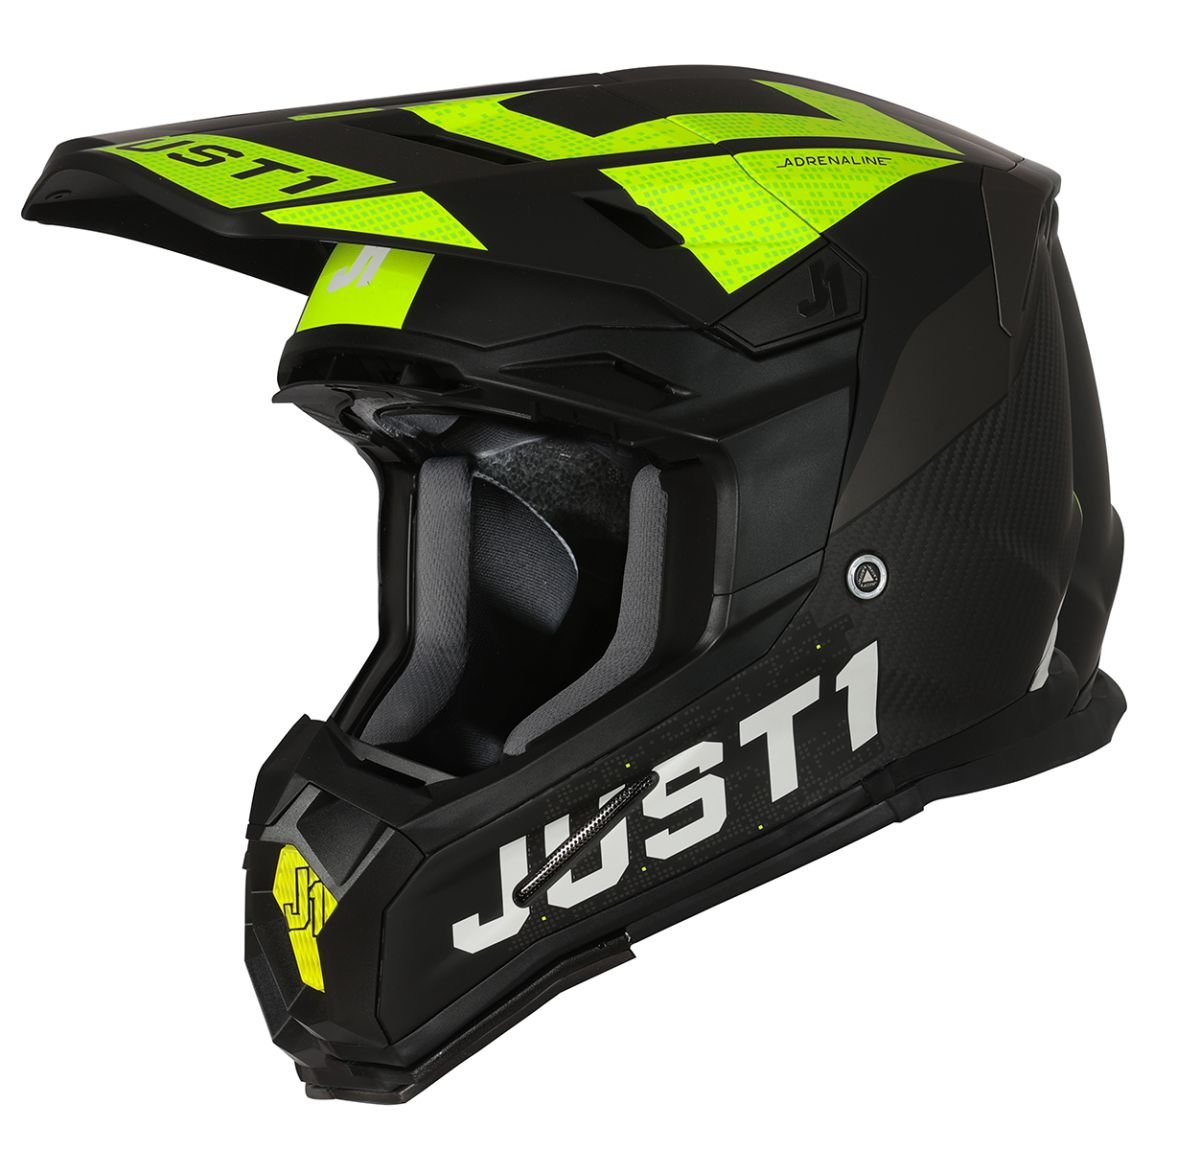 Image of Just1 Helmet J-22 Adrenaline Black Yellow Fluo Carbon Matt Offroad Helmet Size S EN